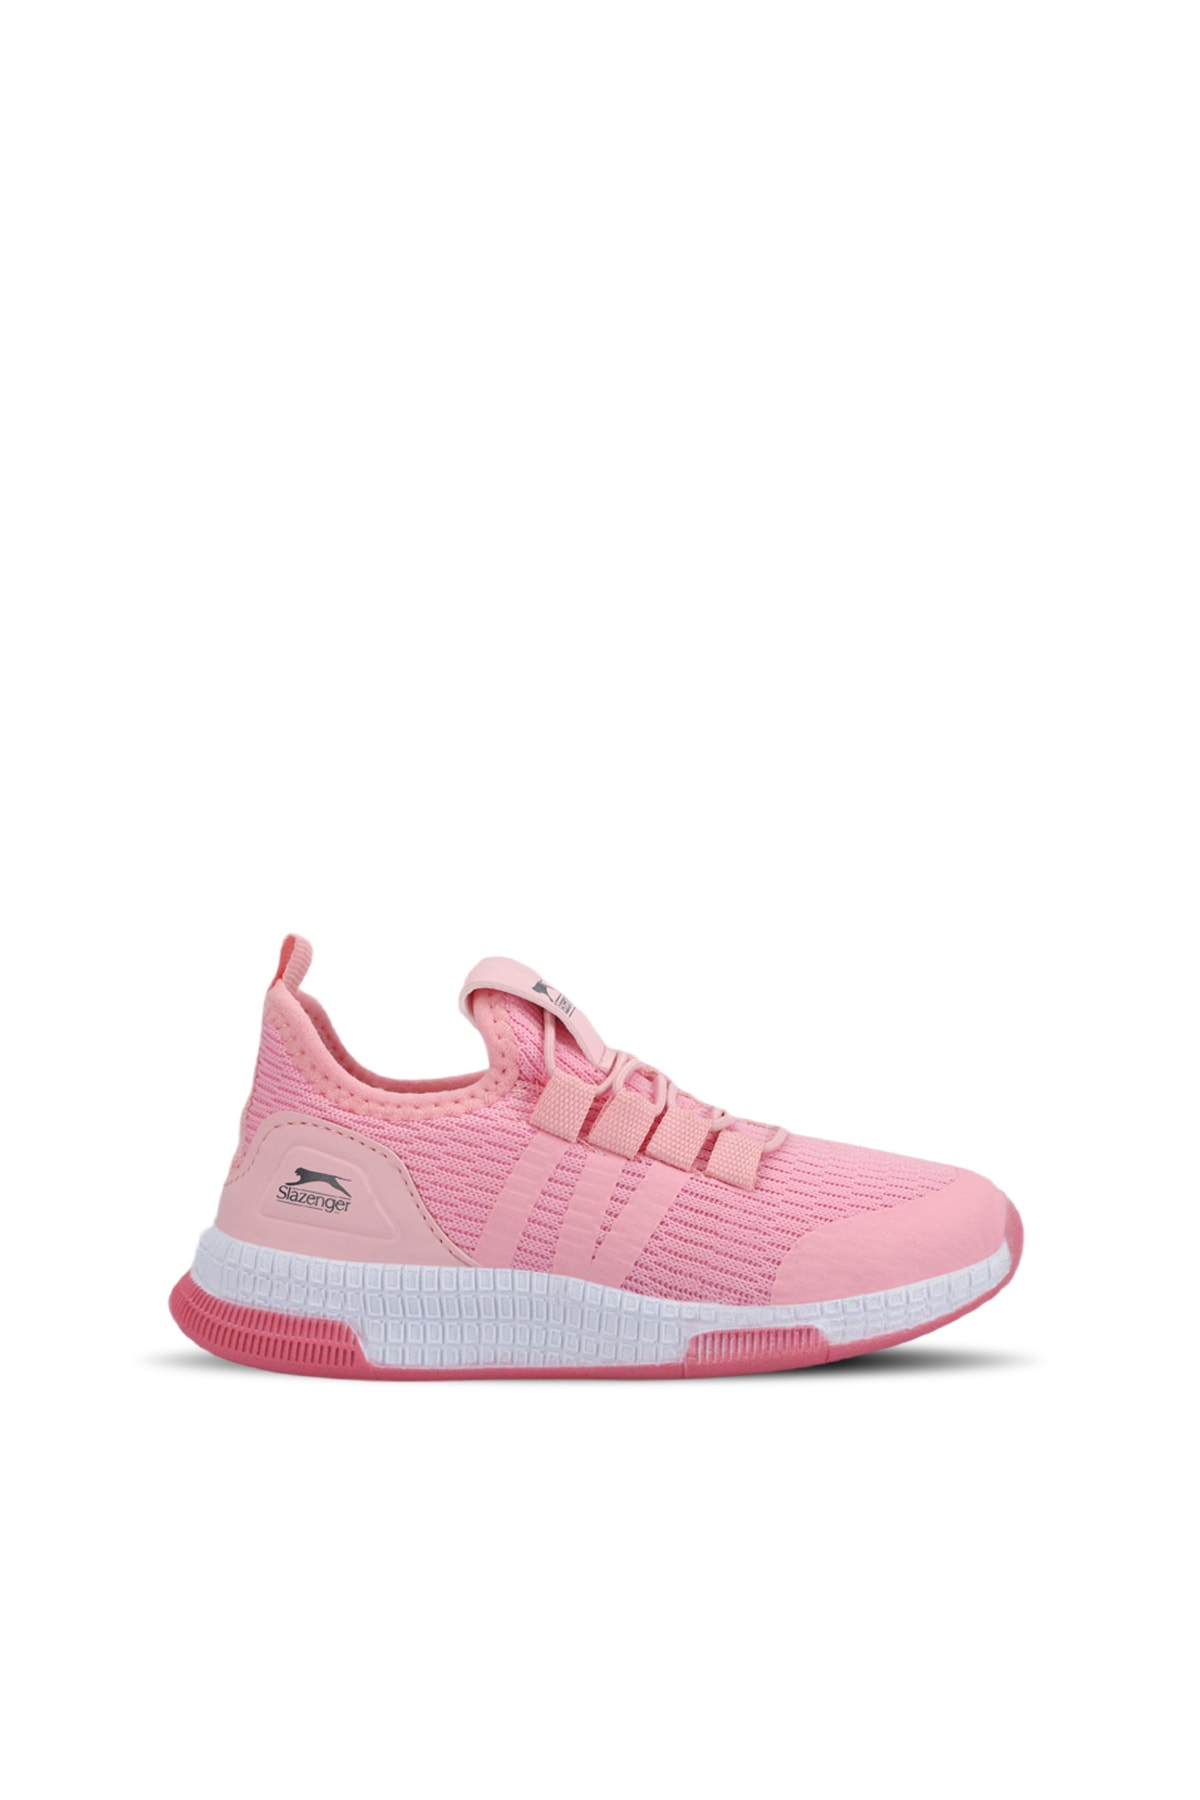 Levně Slazenger EDDIE H Sneaker Girls' Shoes Pink